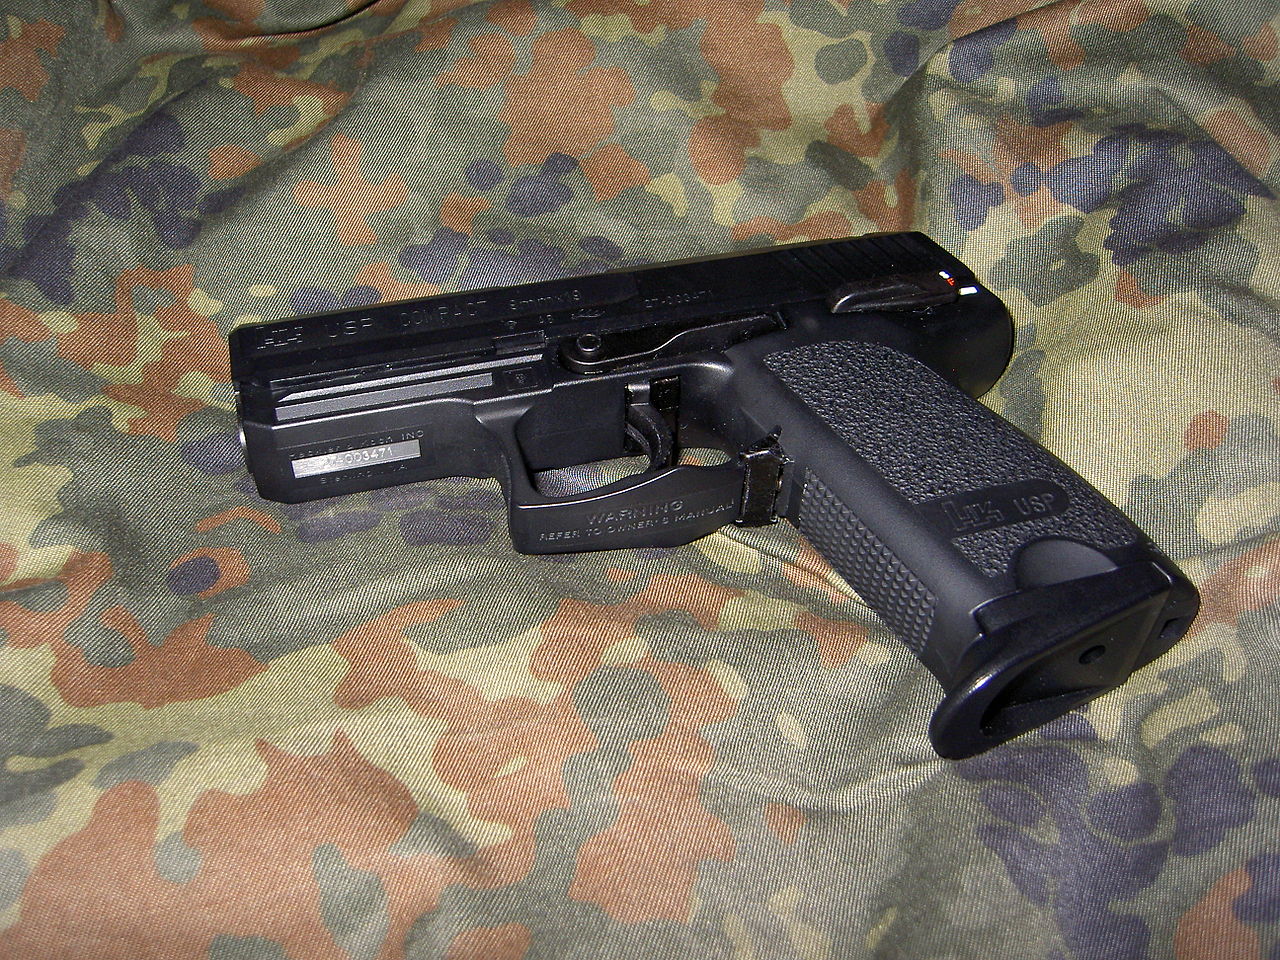 En soft air gun ser oftast ut som ett "riktigt" vapen.